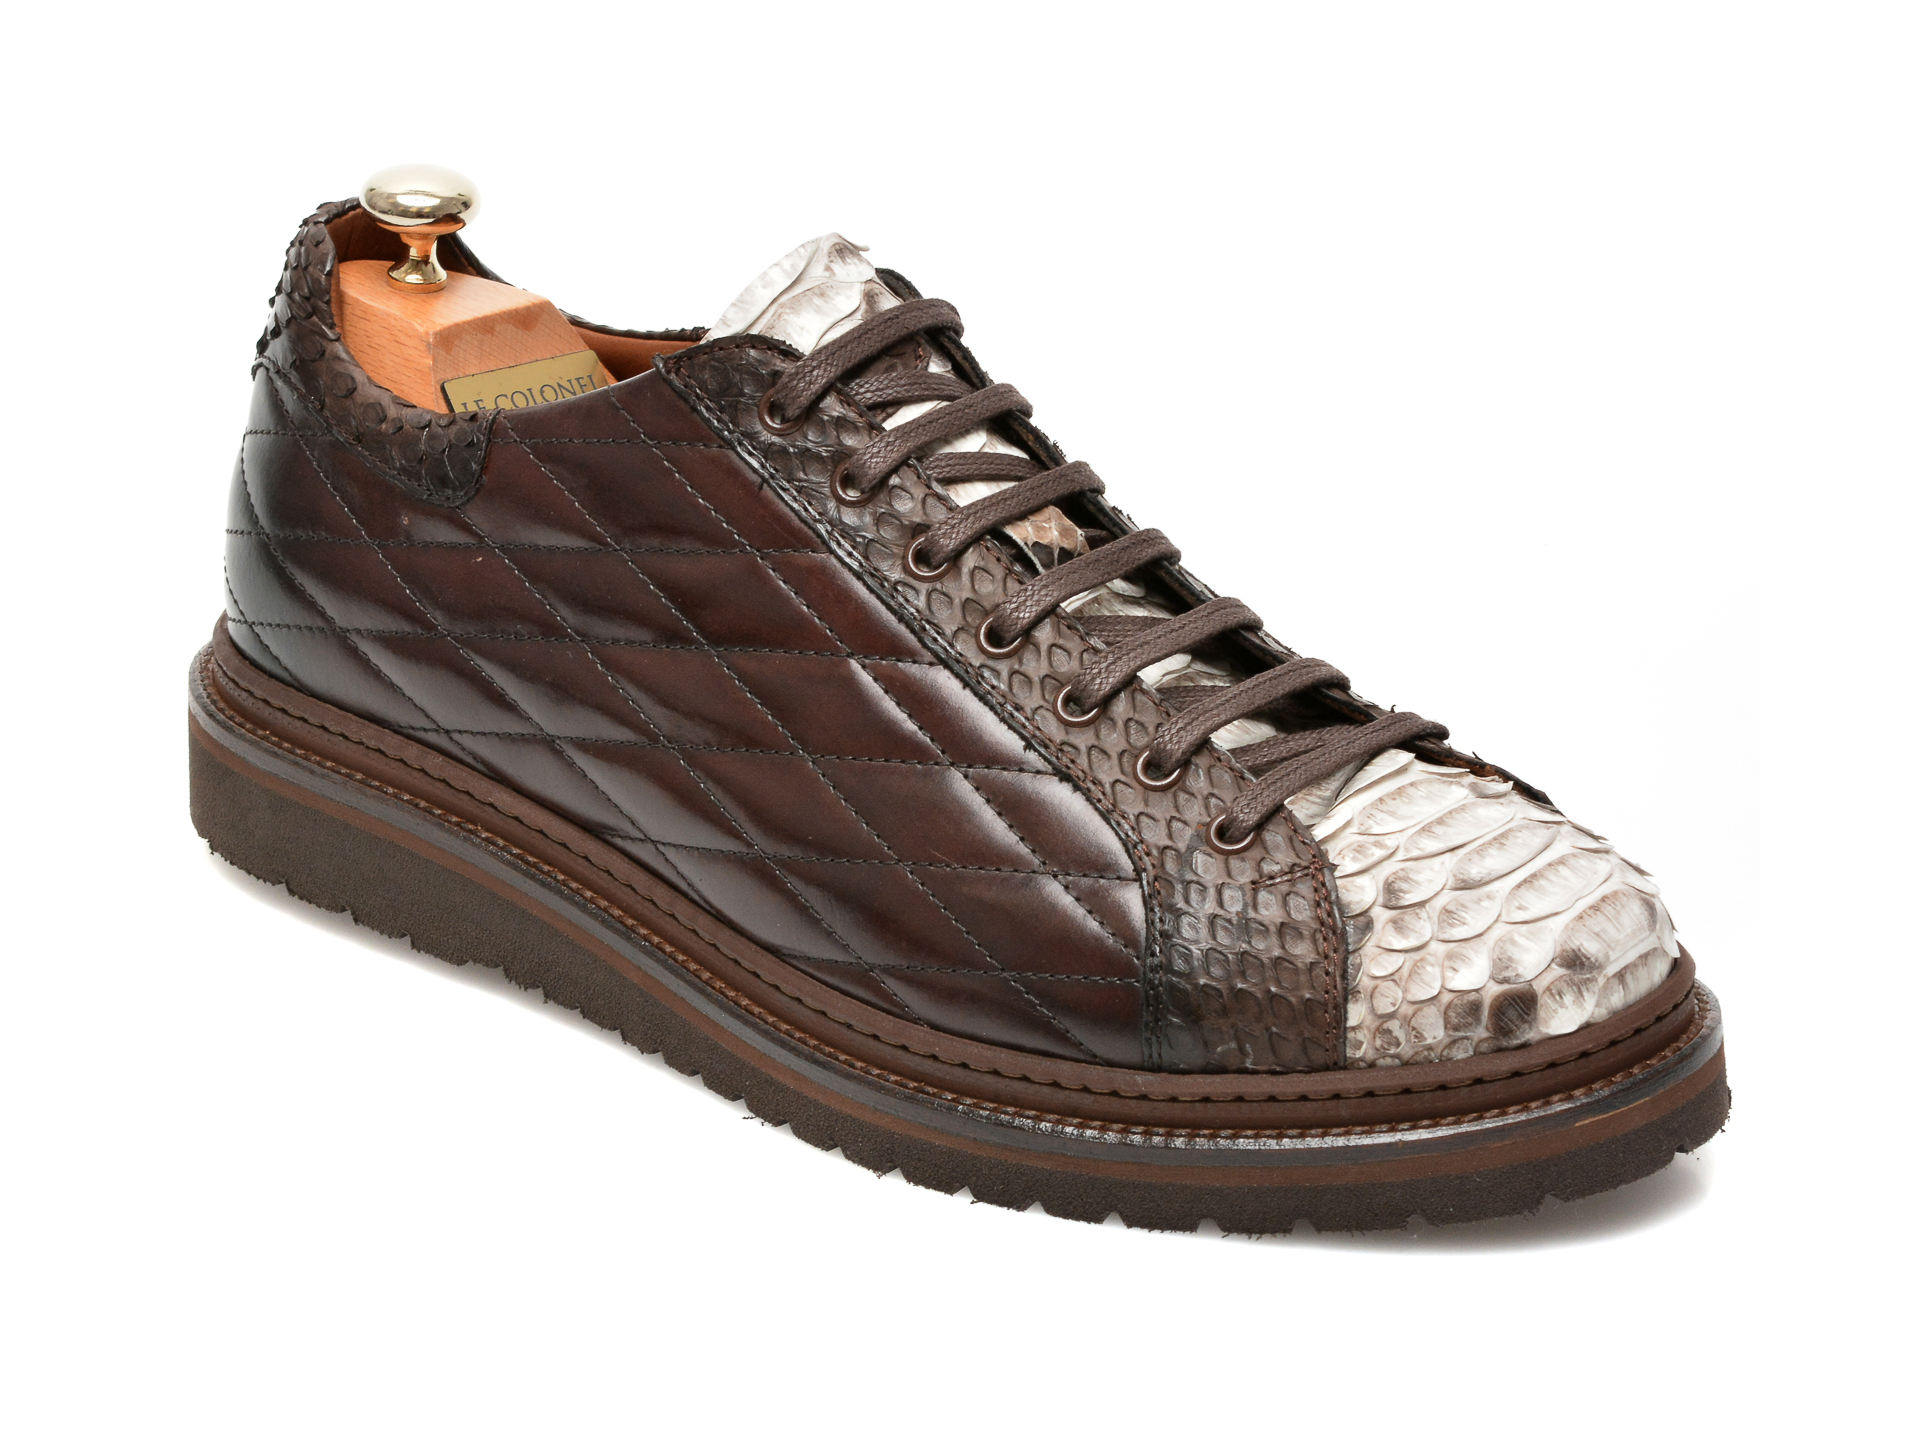 Pantofi LE COLONEL maro, 64802, din piele naturala Le Colonel